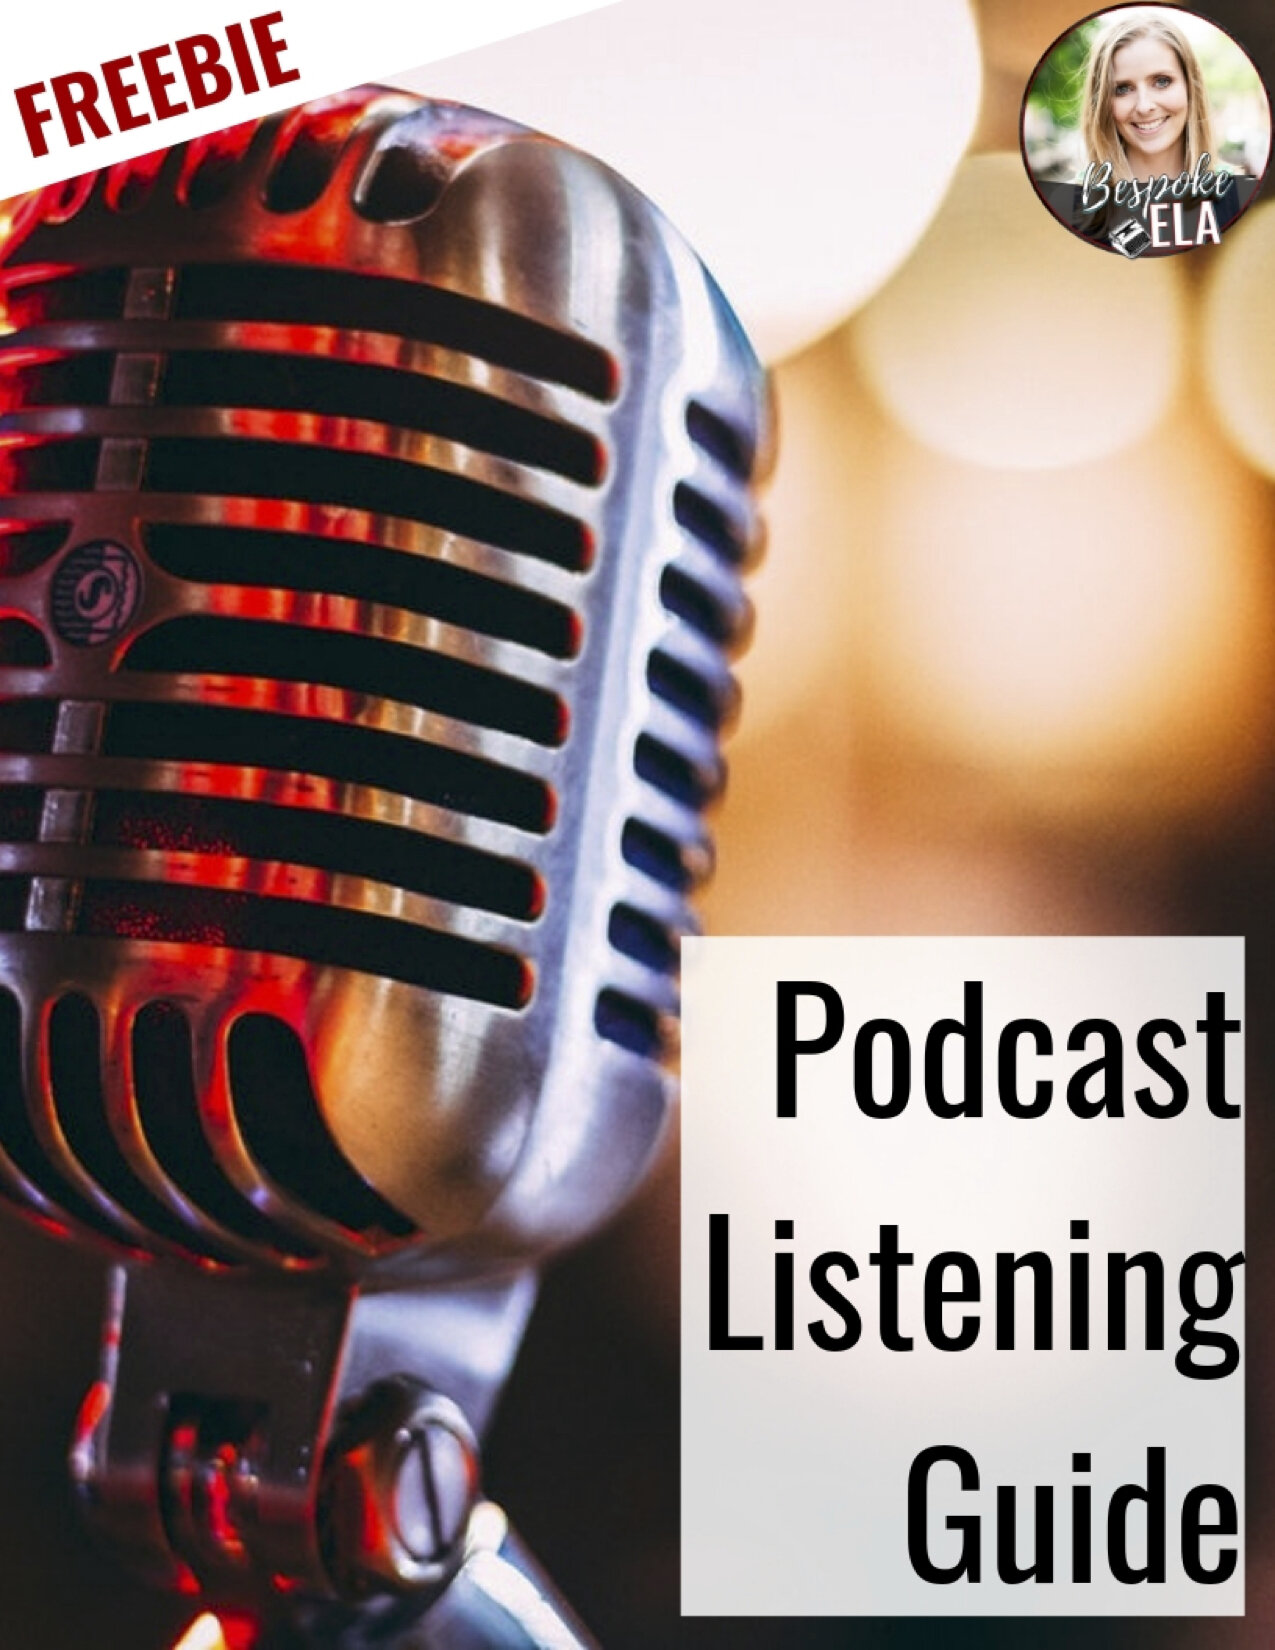 Podcast Listening Guide by Bespoke ELA1.jpg